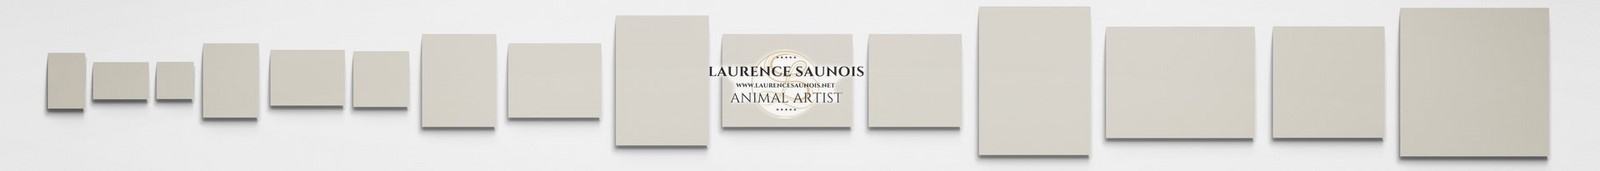 Les différents formats disponibles - Laurence Saunois